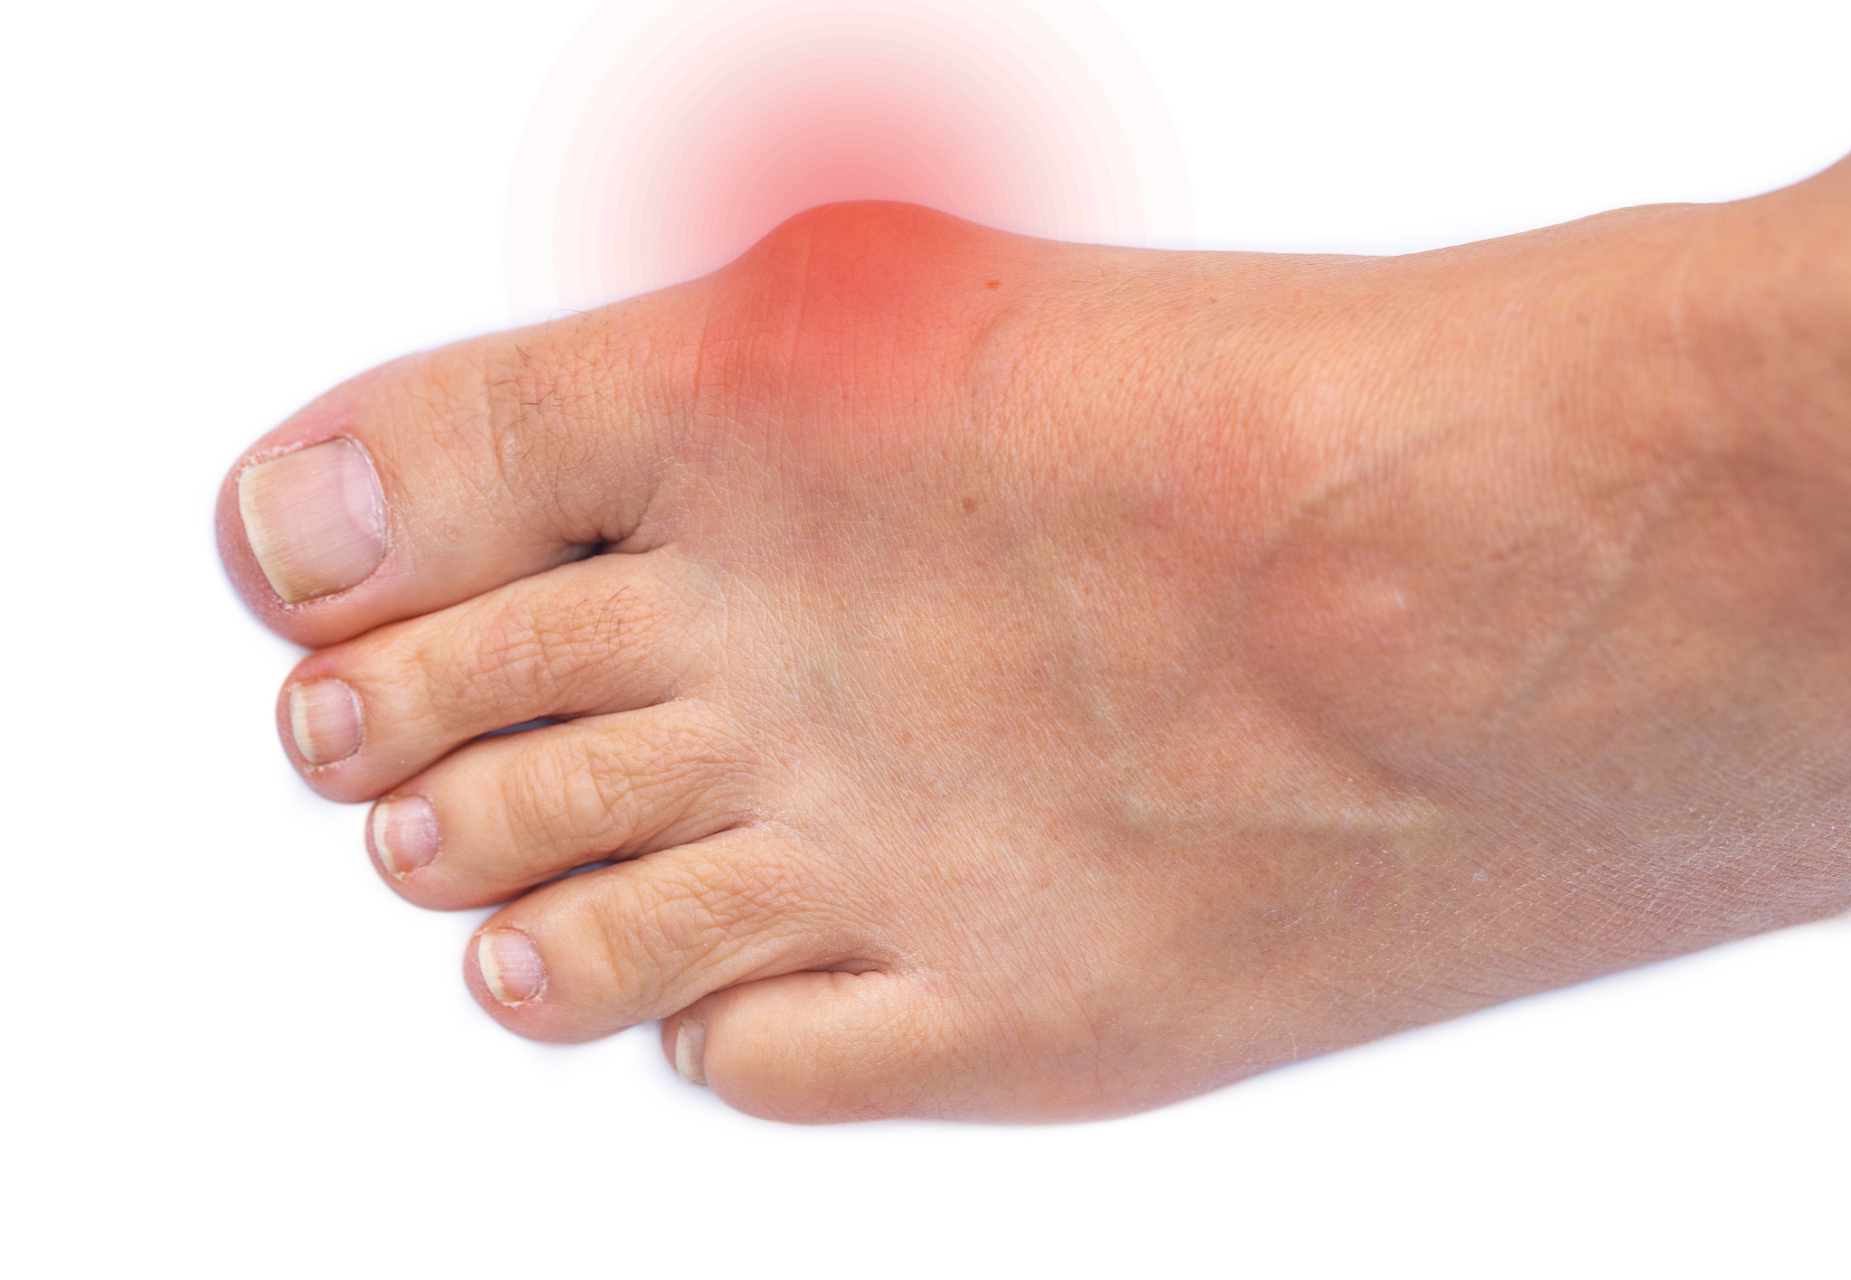 引起脚大拇指关节肿疼的原因很多,在临床比较多见的是以下几方面